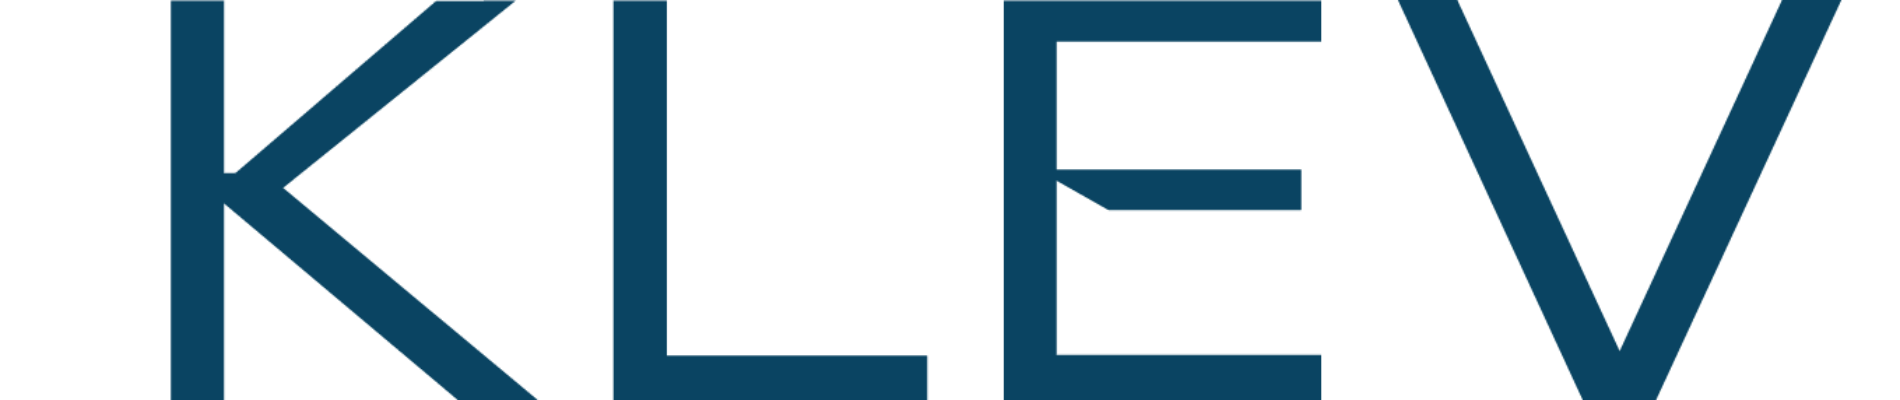 Klevu Oy - Logo